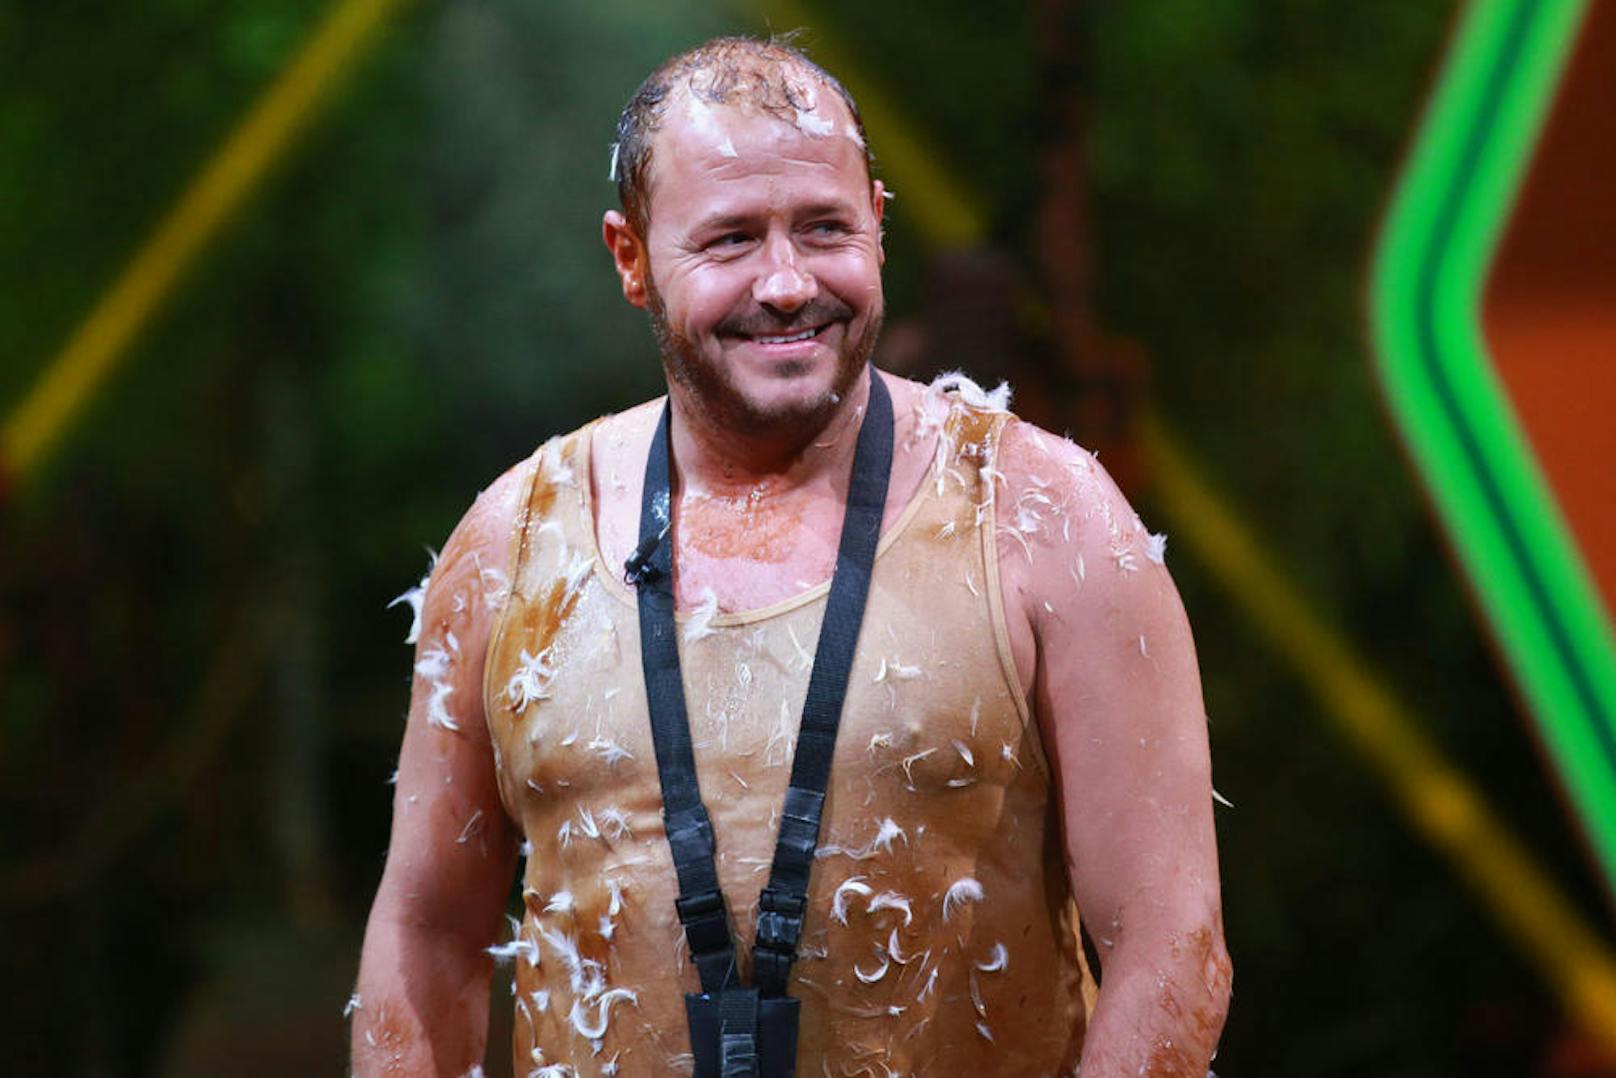 2004 war Willi bei der zweiten Staffel des Dschungelcamps dabei, 2015 kämpfte er bei "Ich bin ein Star - Lasst mich wieder rein!" um den Wiedereinzug ins Dschungelcamp.